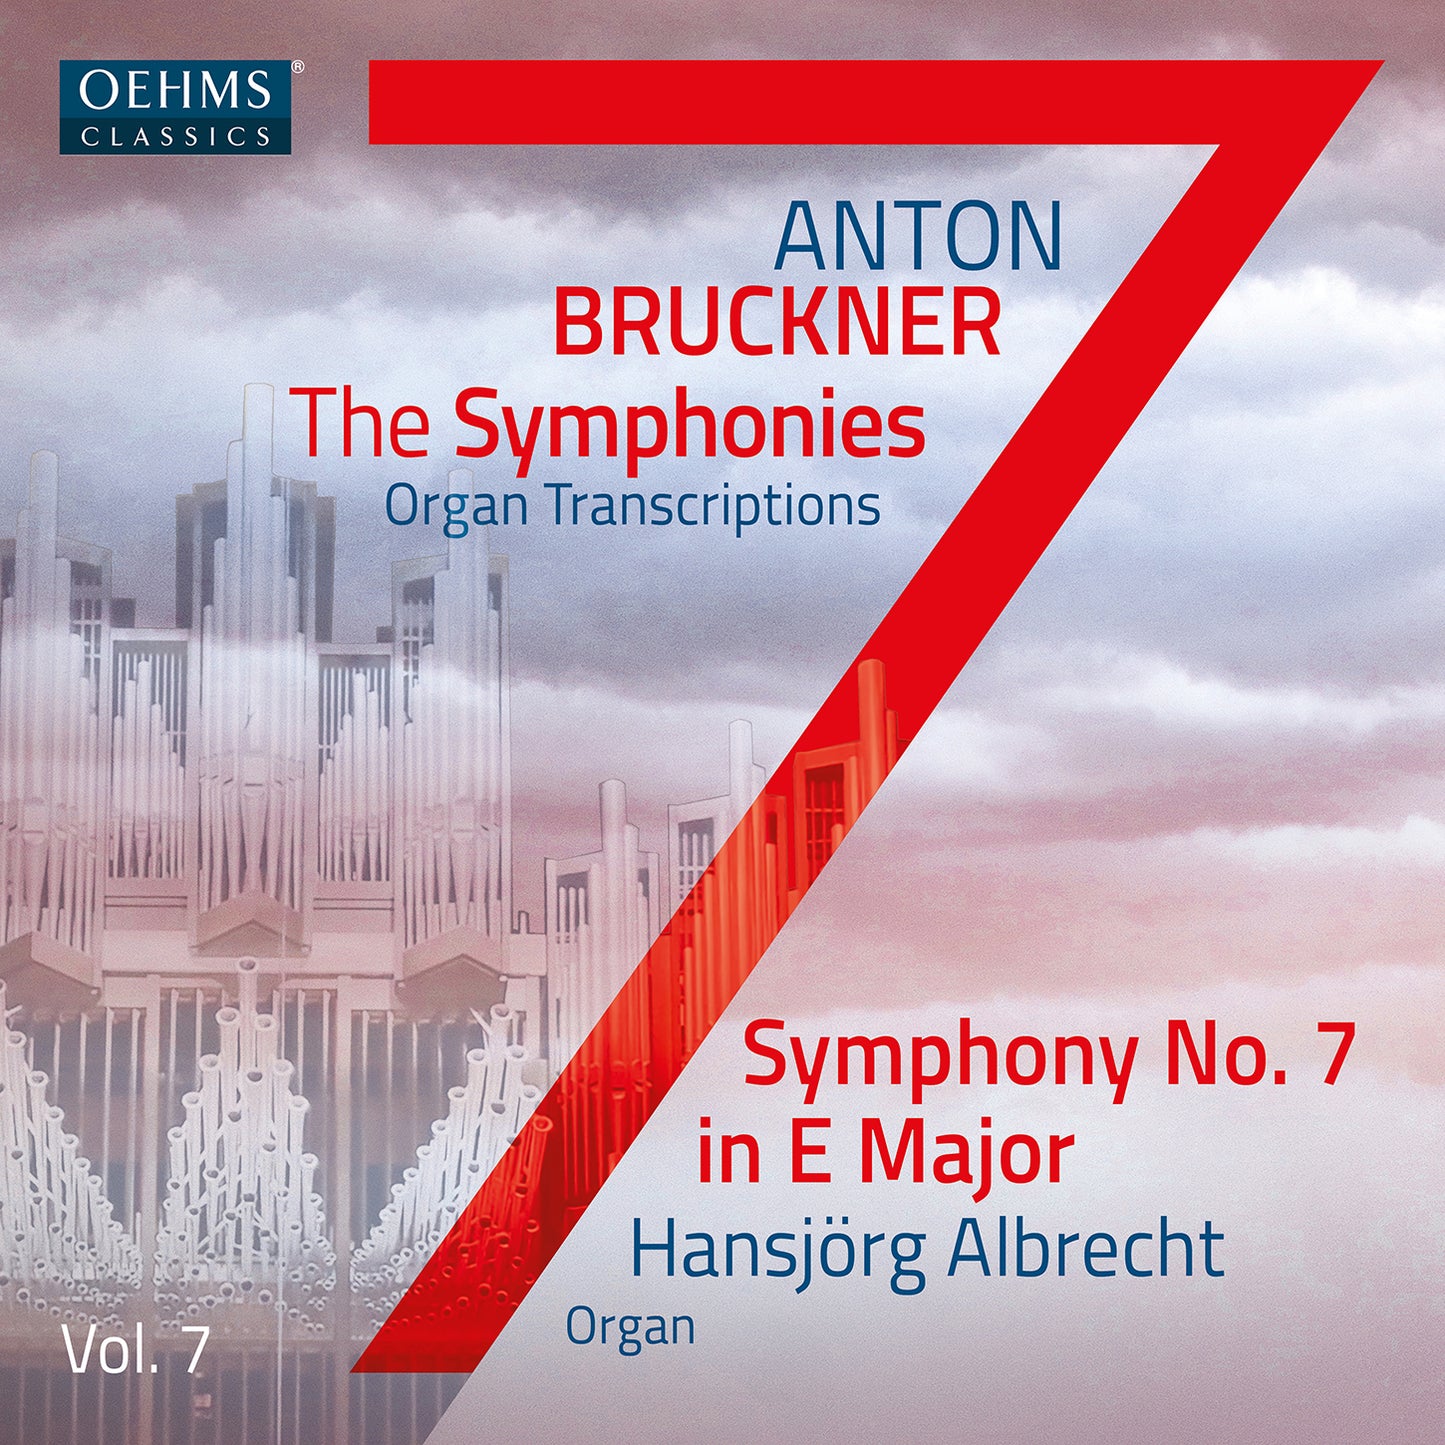 The Bruckner Symphonies (Organ Transcriptions), Vol. 7